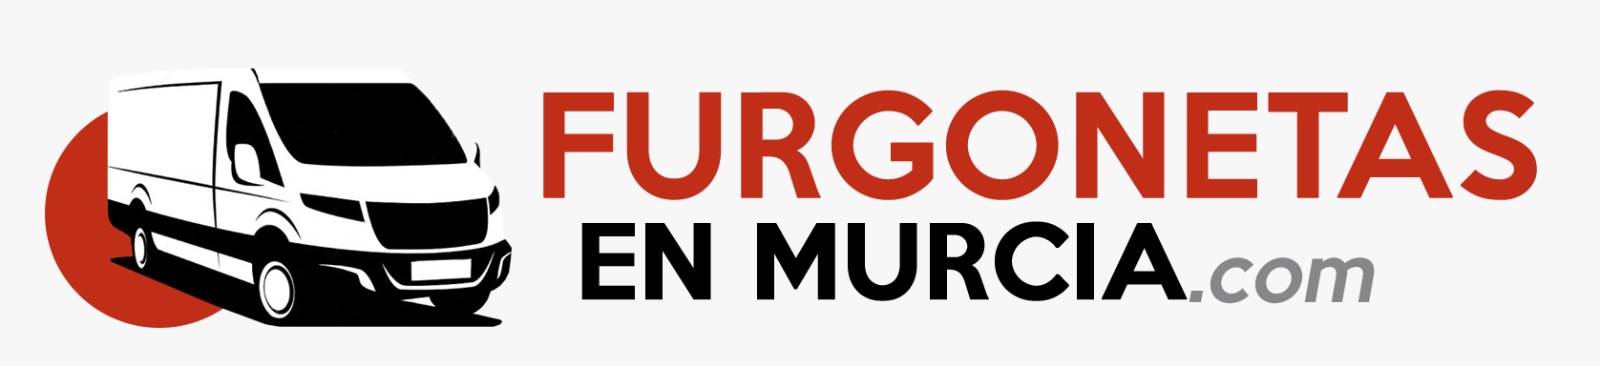 Logotipo Furgonetas En Murcia